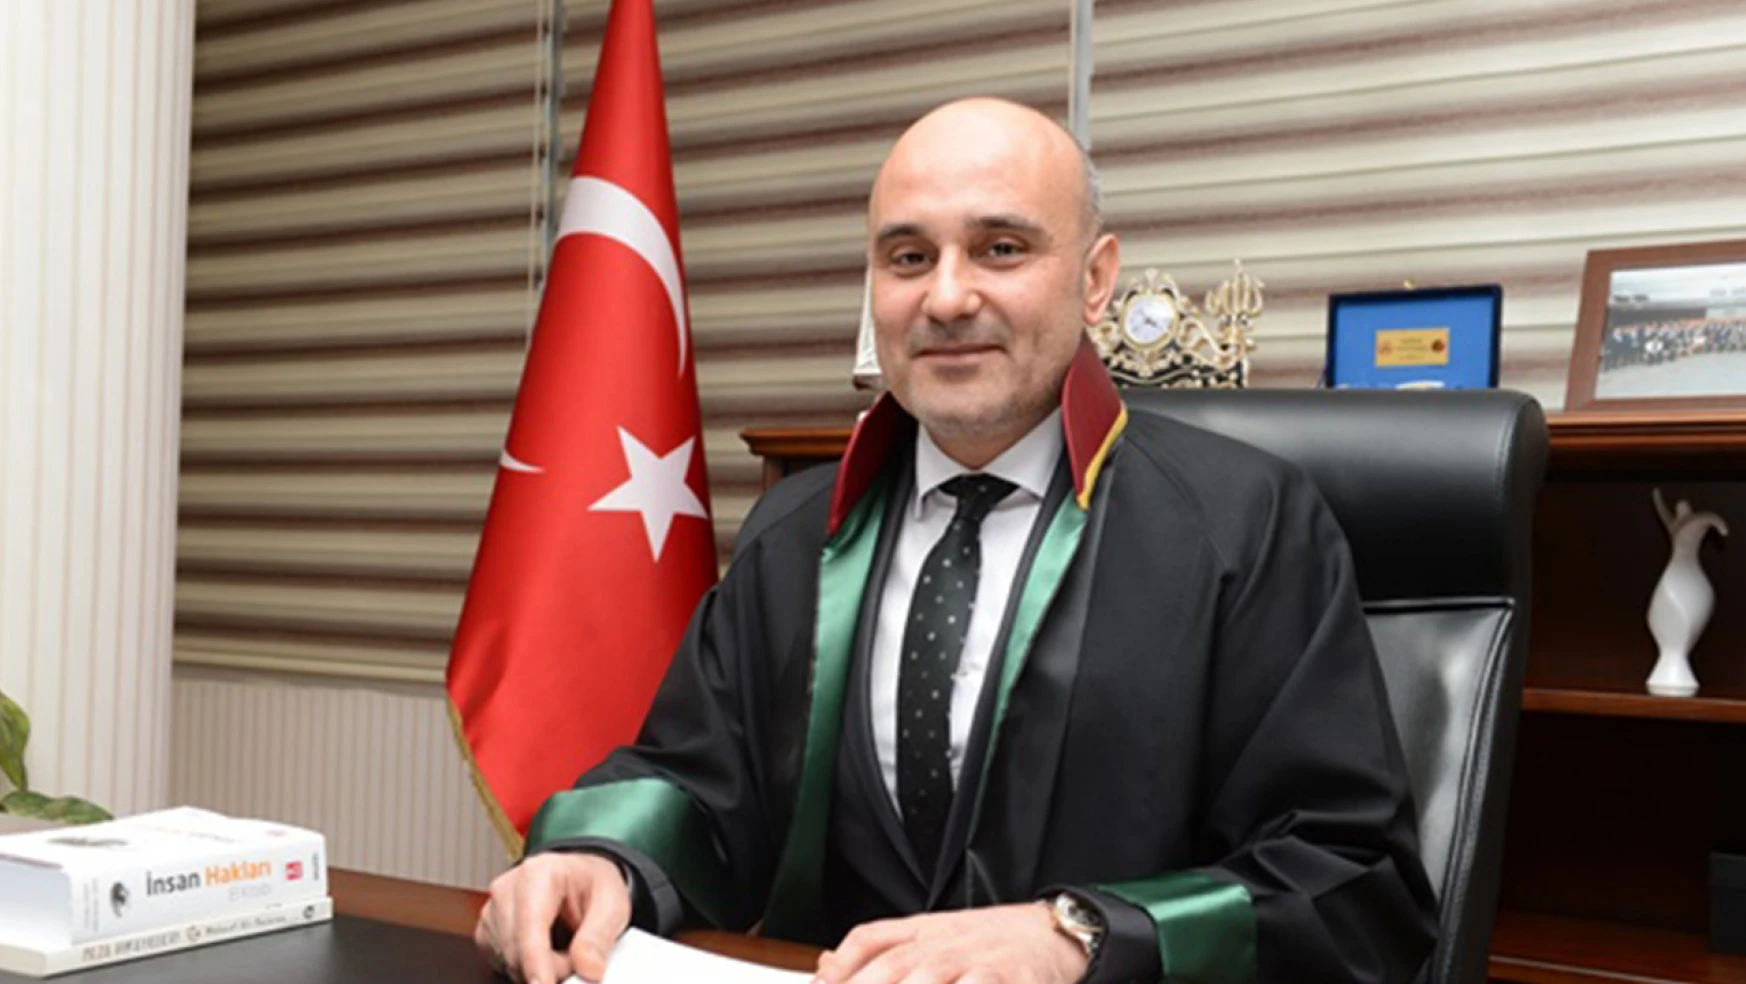 Kahramanmaraş Barosu Başkanı Gül, 'Avukat için de adalet!'